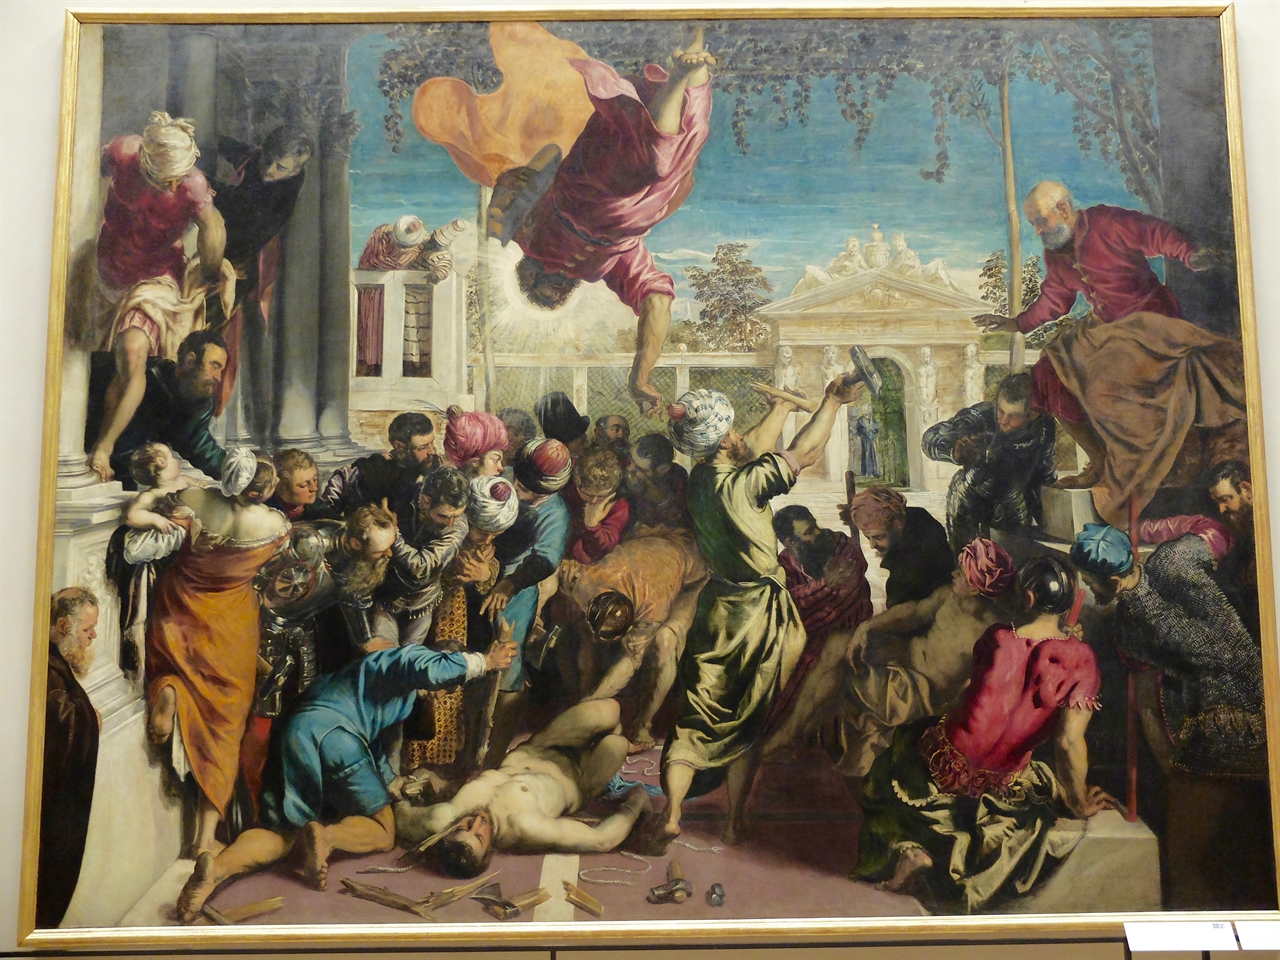 틴토레토, '노예를 구출하는 성 마르코의 기적', 베네치아 아카데미아 미술관, 역동적인 묘사에 화려하고 풍부한 색채 표현까지, 극적인 상황을 담대하고 실감나게 묘사한 틴토레토의 대표작입니다.